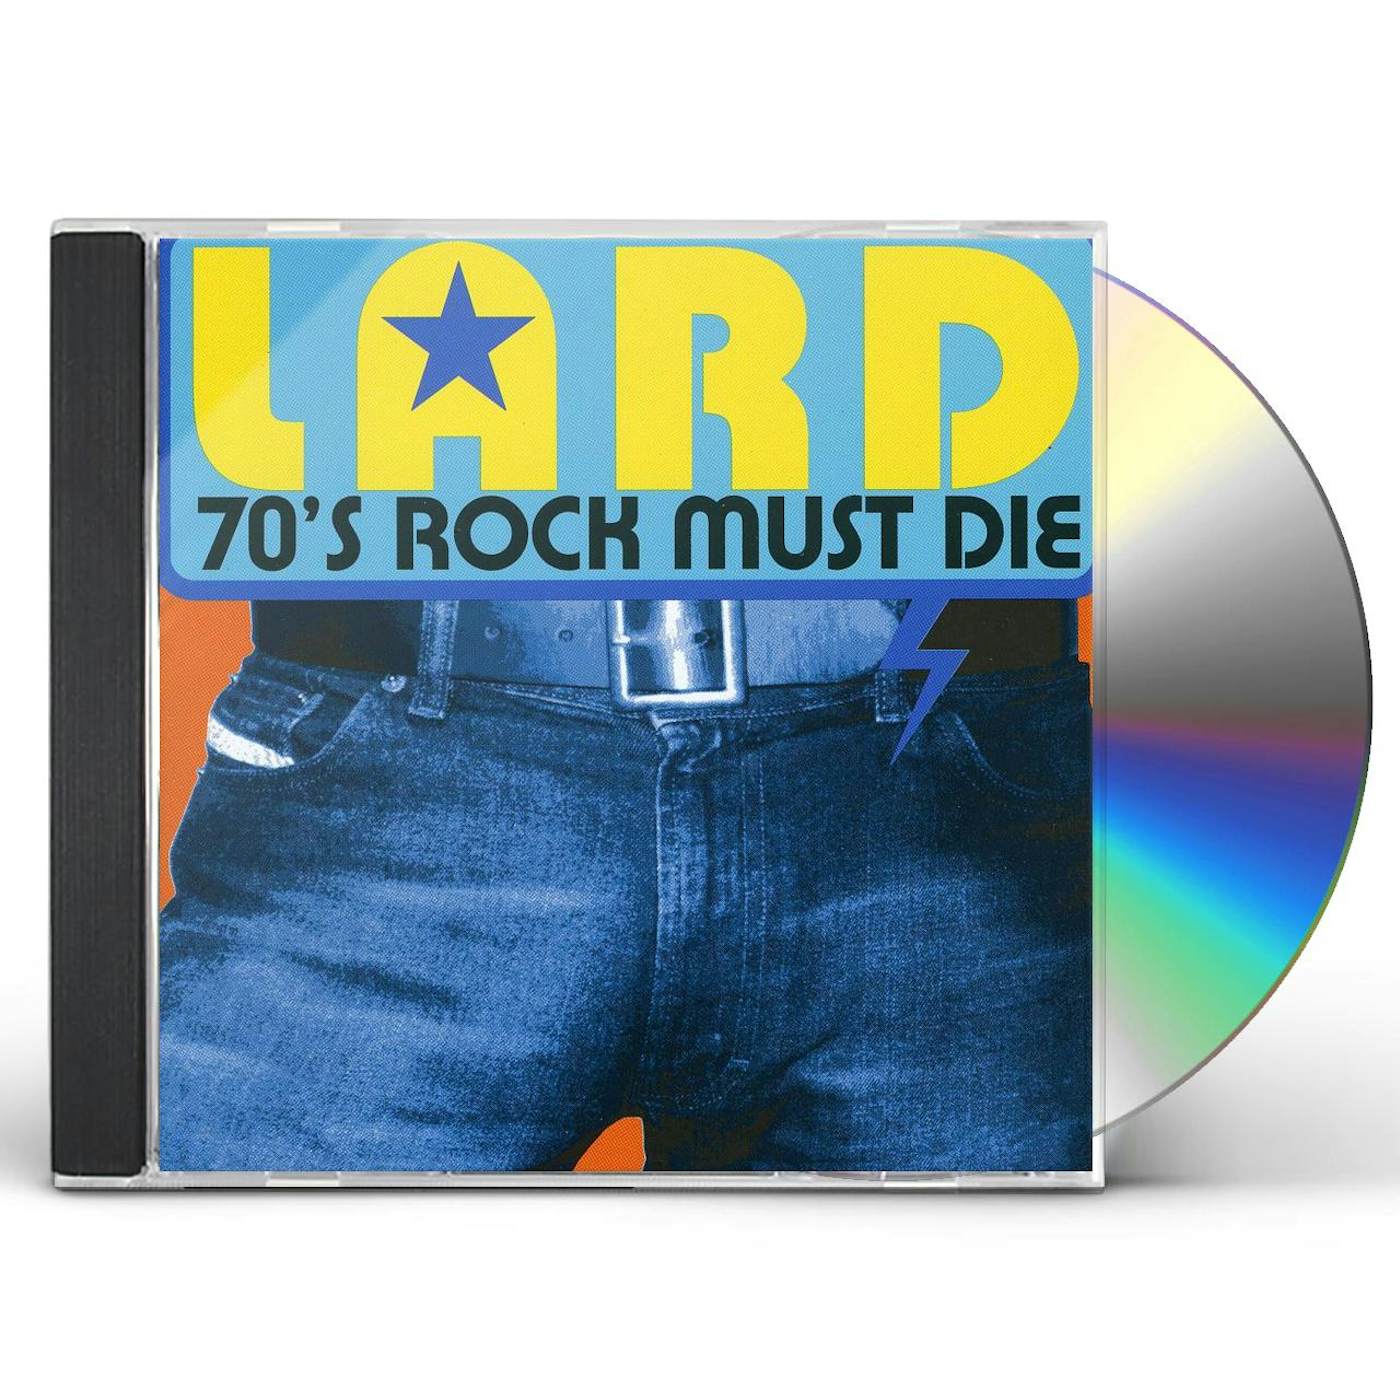 Lard 70'S ROCK MUST DIE CD